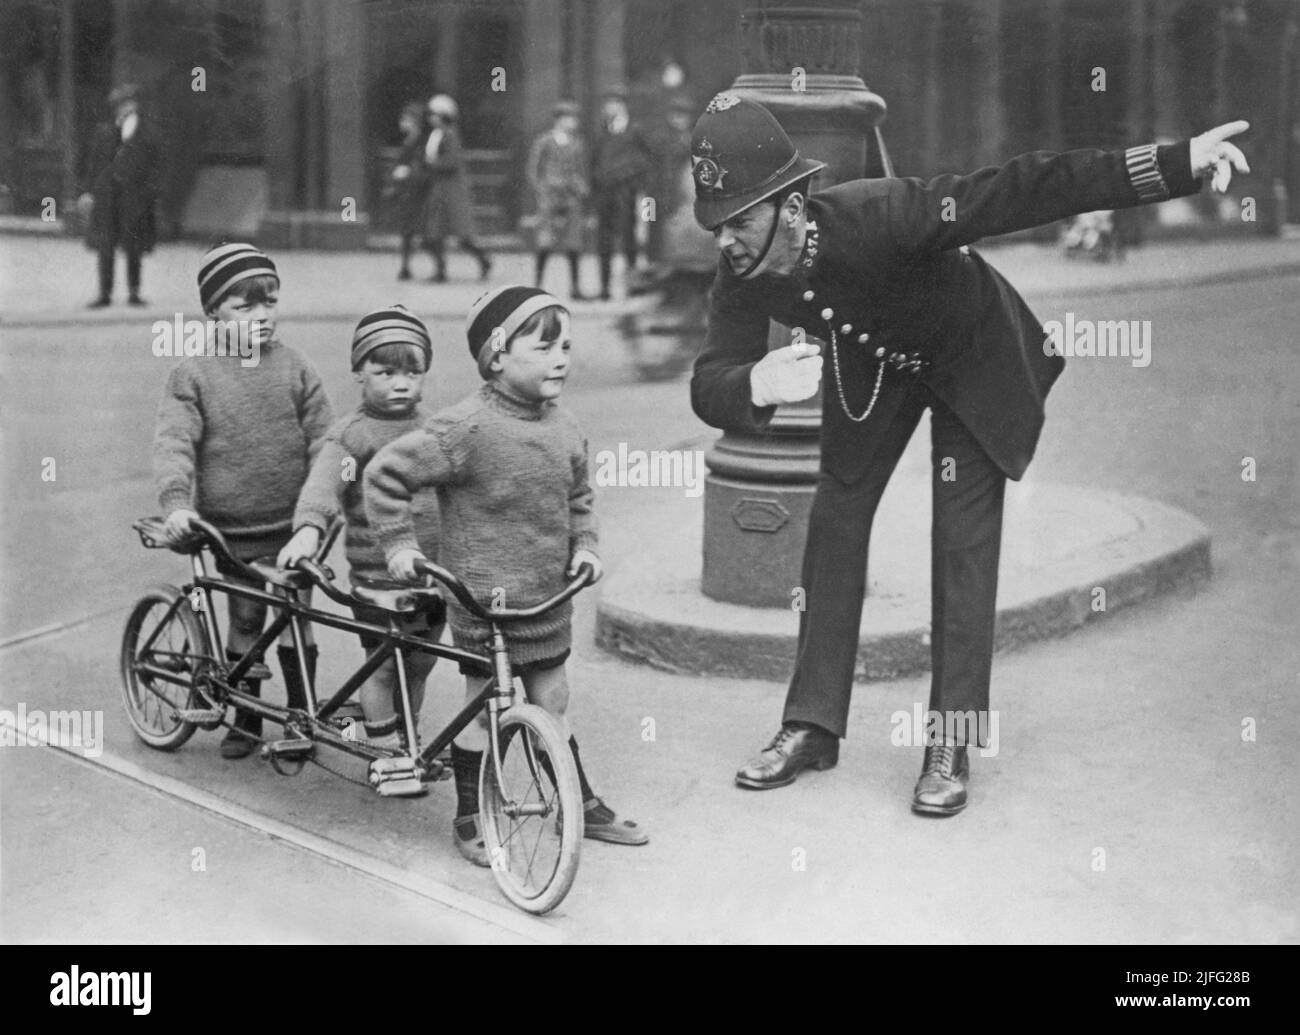 Londra nel 1920s. Un poliziotto in una strada di Londra che fornisce indicazioni per i tre bambini in bicicletta. La bicicletta è appositamente realizzata per tre persone. I ragazzi sono vestiti in modo simile con maglioni e cappellini di lana. Foto Stock